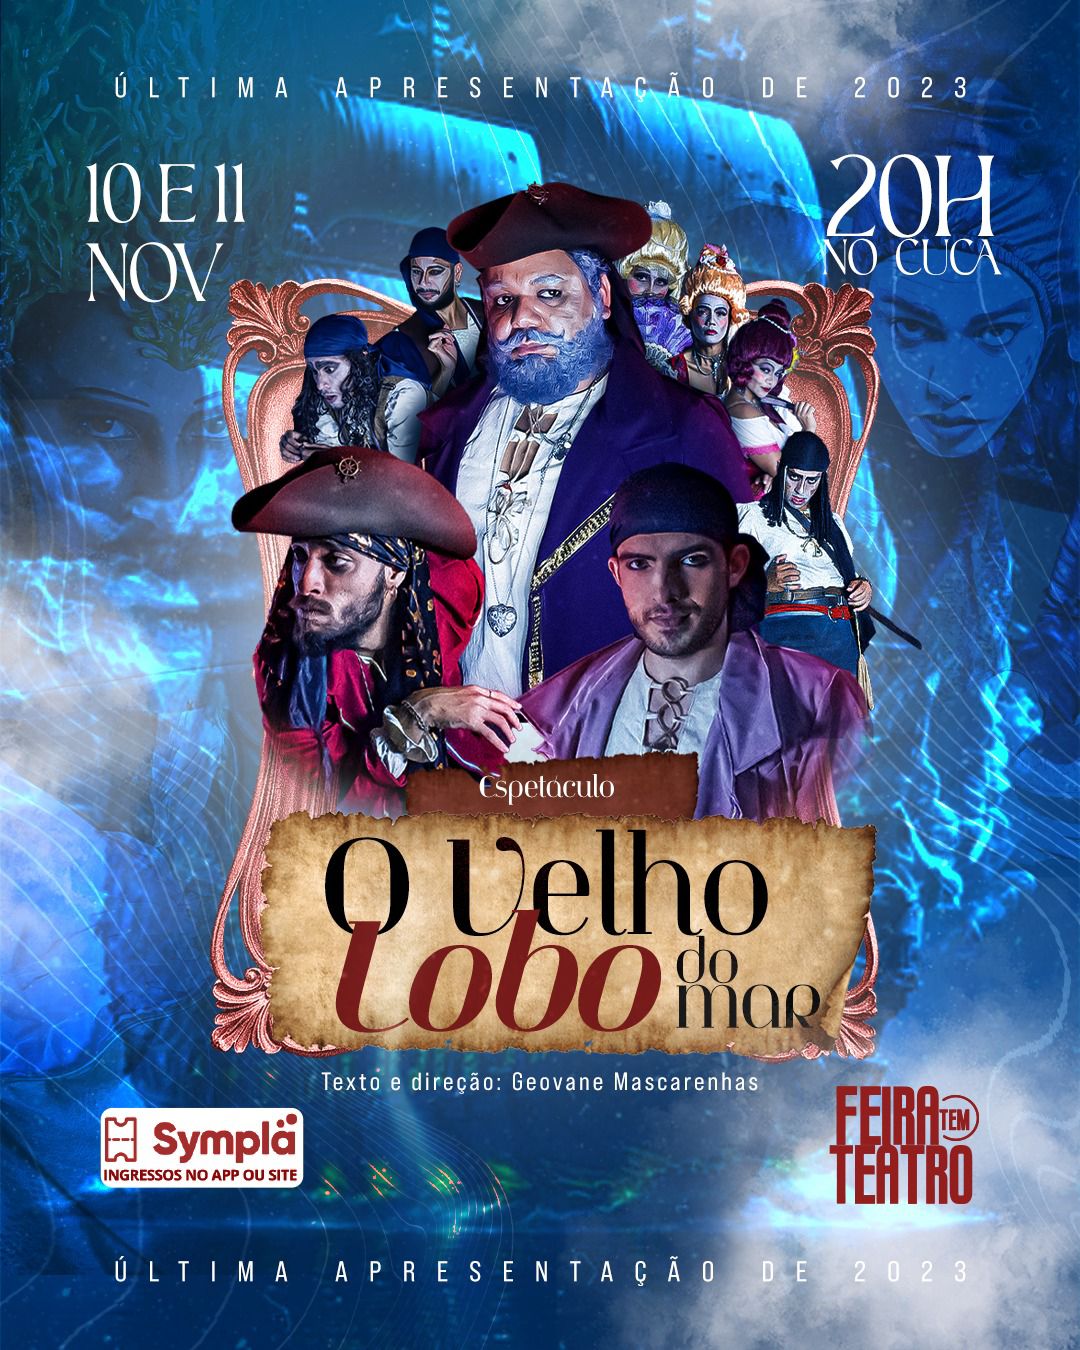 Feira Tem Teatro encerra programação de 2023 com musical 'O Velho Lobo do Mar'